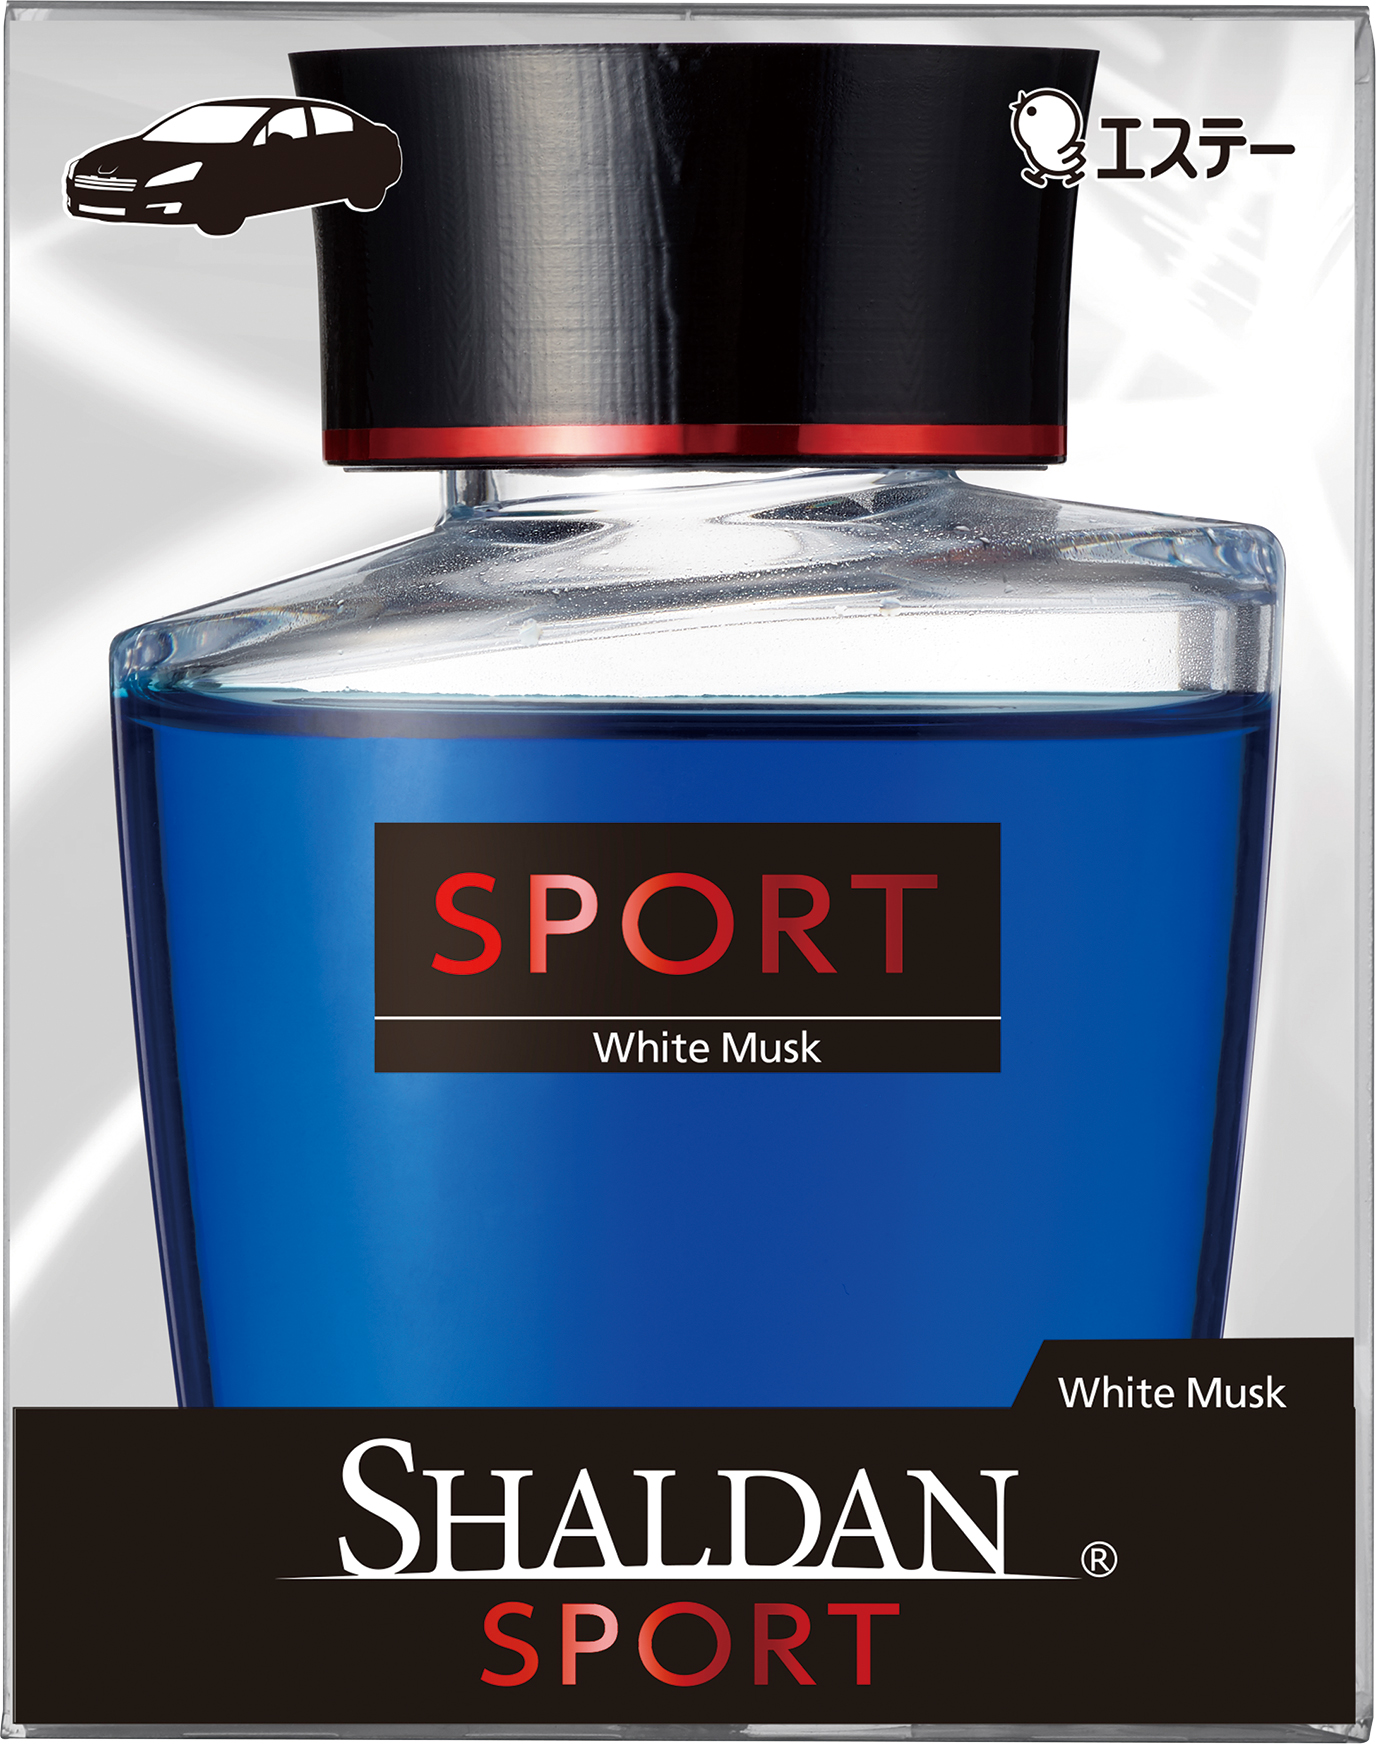 エステー スポーティーな車用芳香剤 Shaldan Sport を新発売 エステー株式会社のプレスリリース